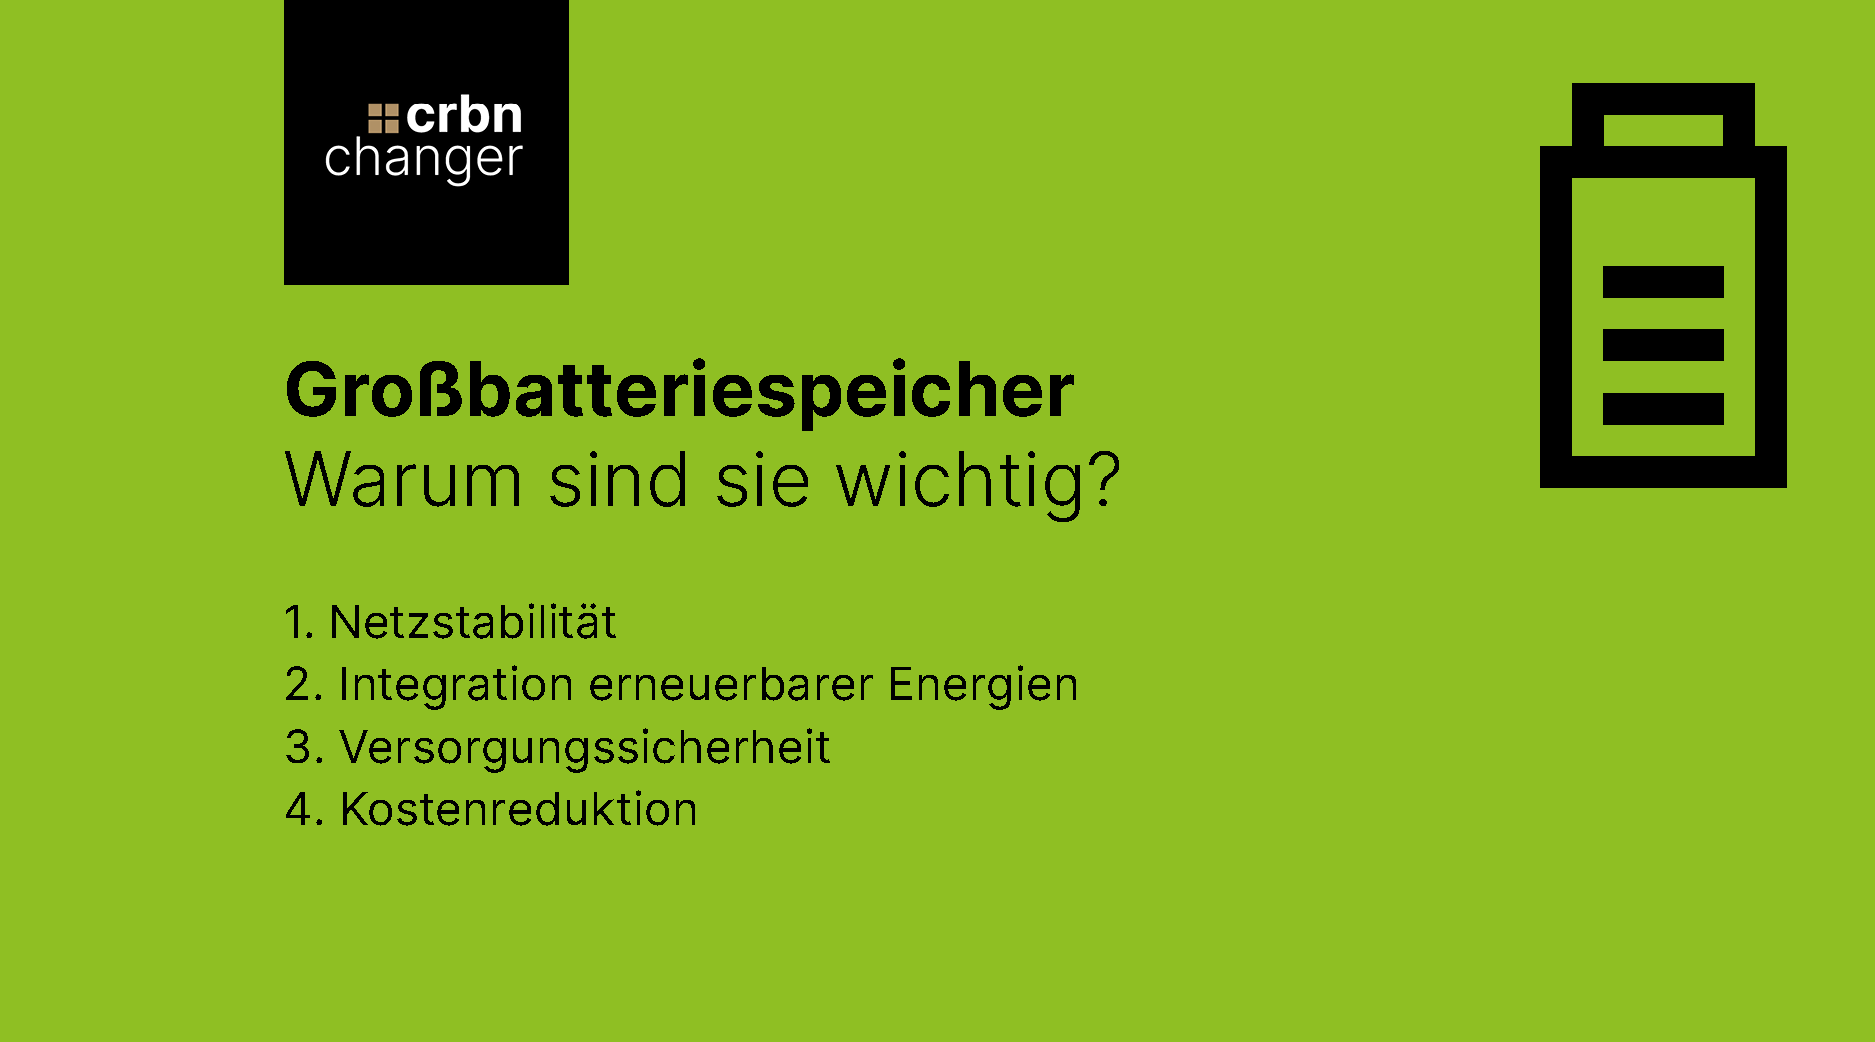 Großbatteriespeicher Warum sind sie wichtig? 1. Netzstabilität 2. Integration erneuerbarer Energien 3. Versorgungssicherheit 4. Kostenreduktion